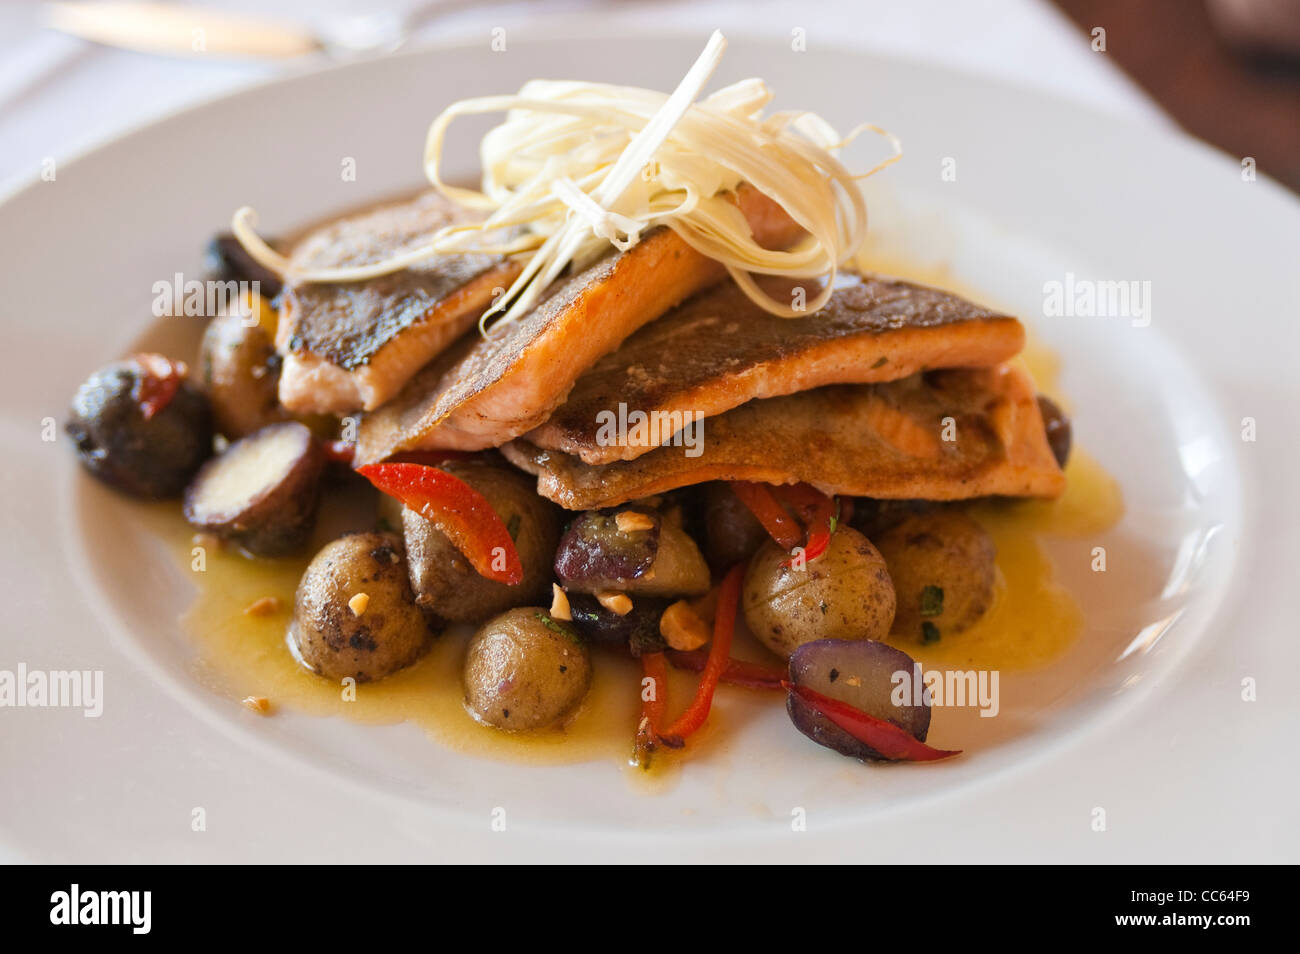 Peru, Lima. Grilled Salmon Peruvian cuisine. Stock Photo